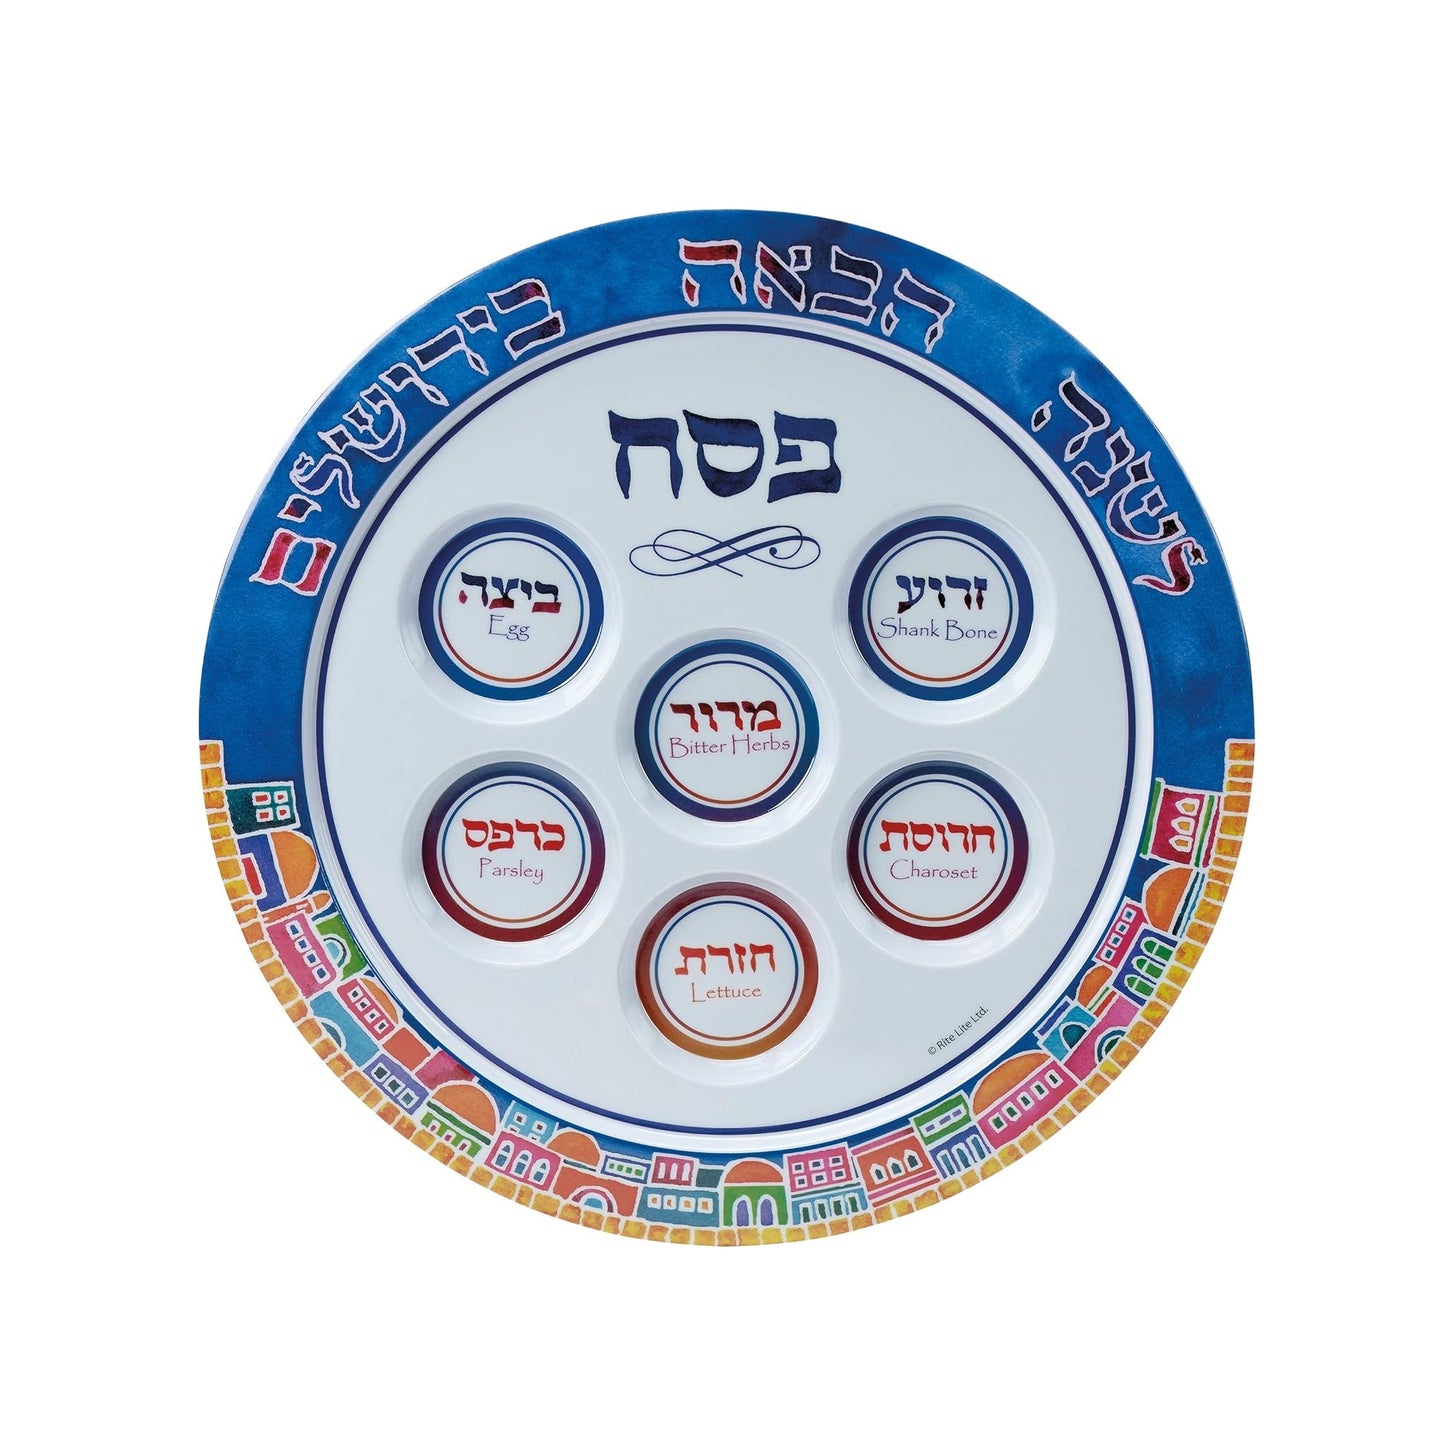 Jerusalem Melamine Seder Plate